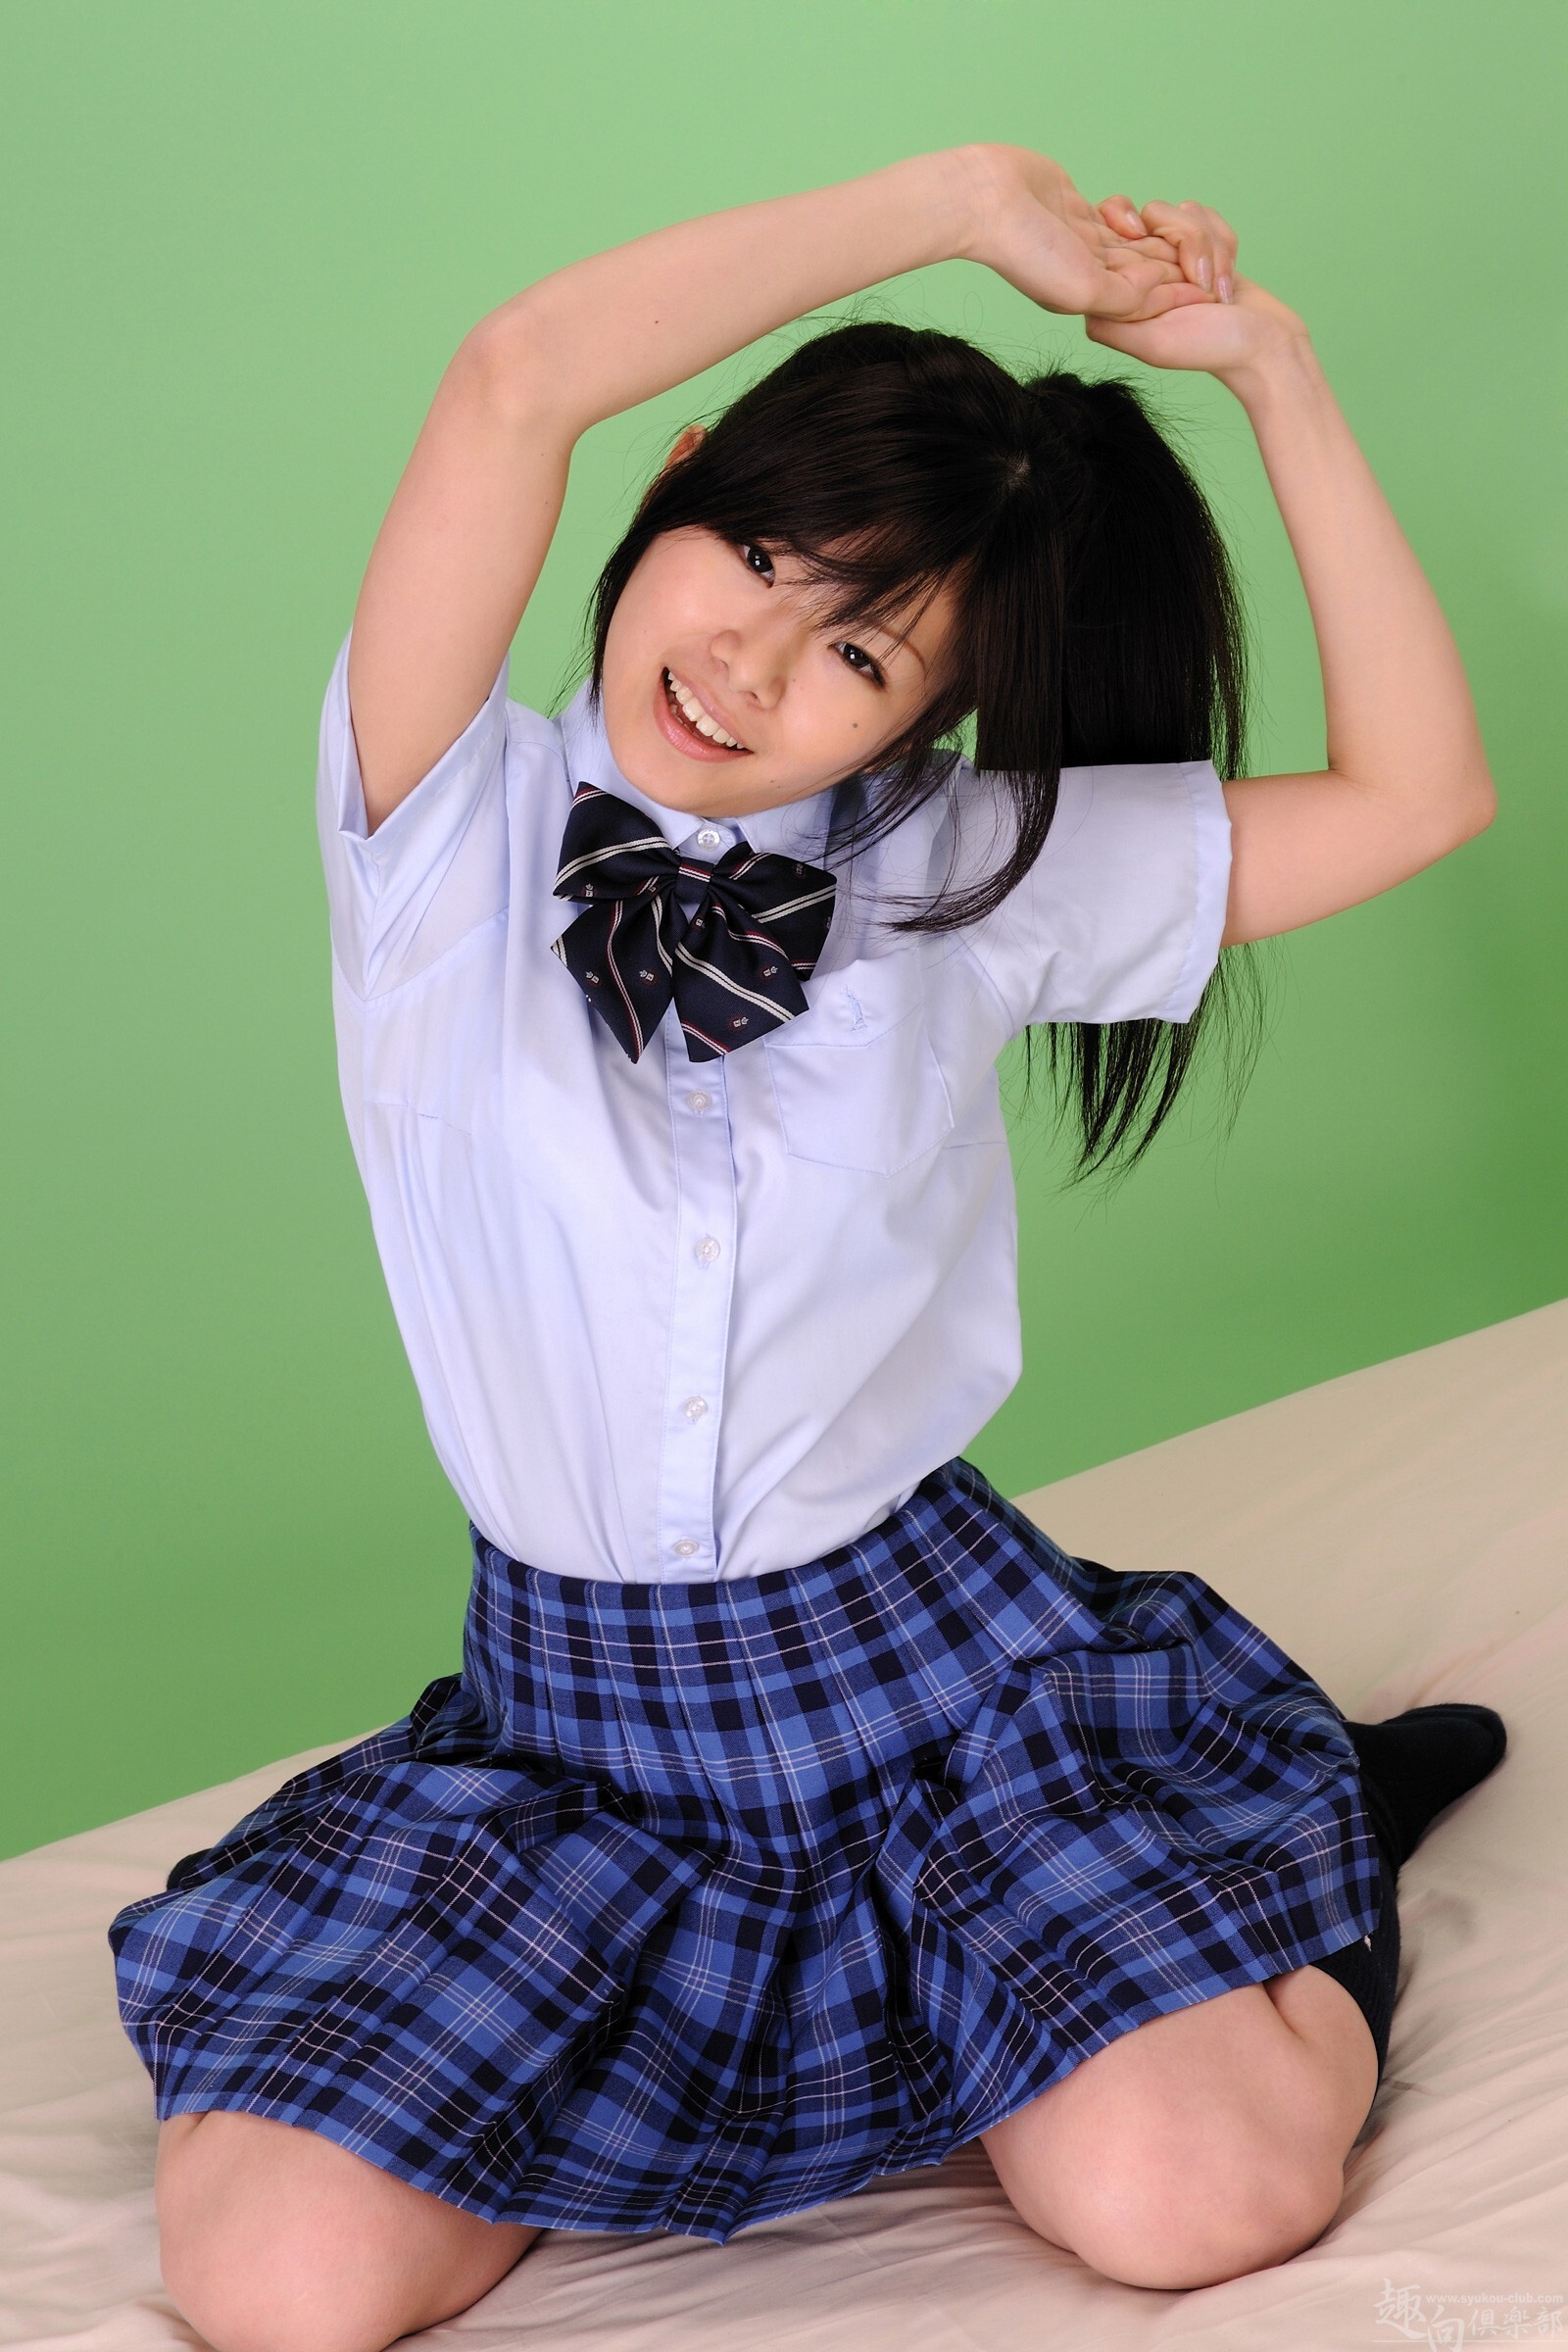 [syukou club] 2015.07.09 digi girl no.225 school girl